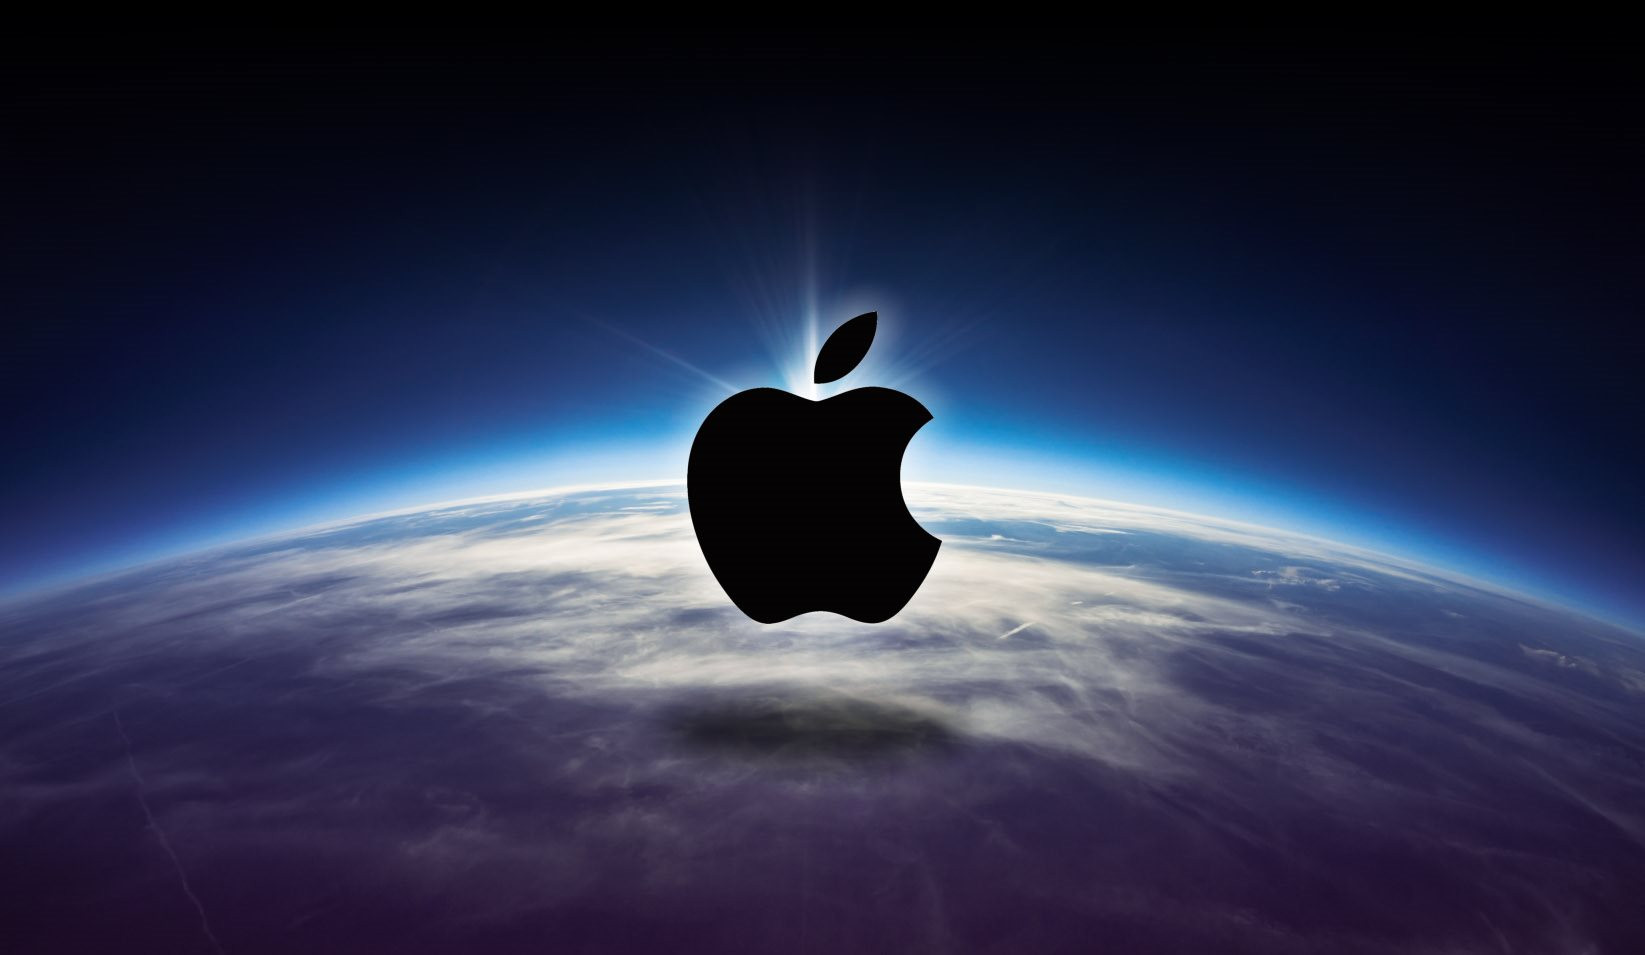 Vén màn bí mật: Hóa ra Apple không sa thải nhân viên là vì…